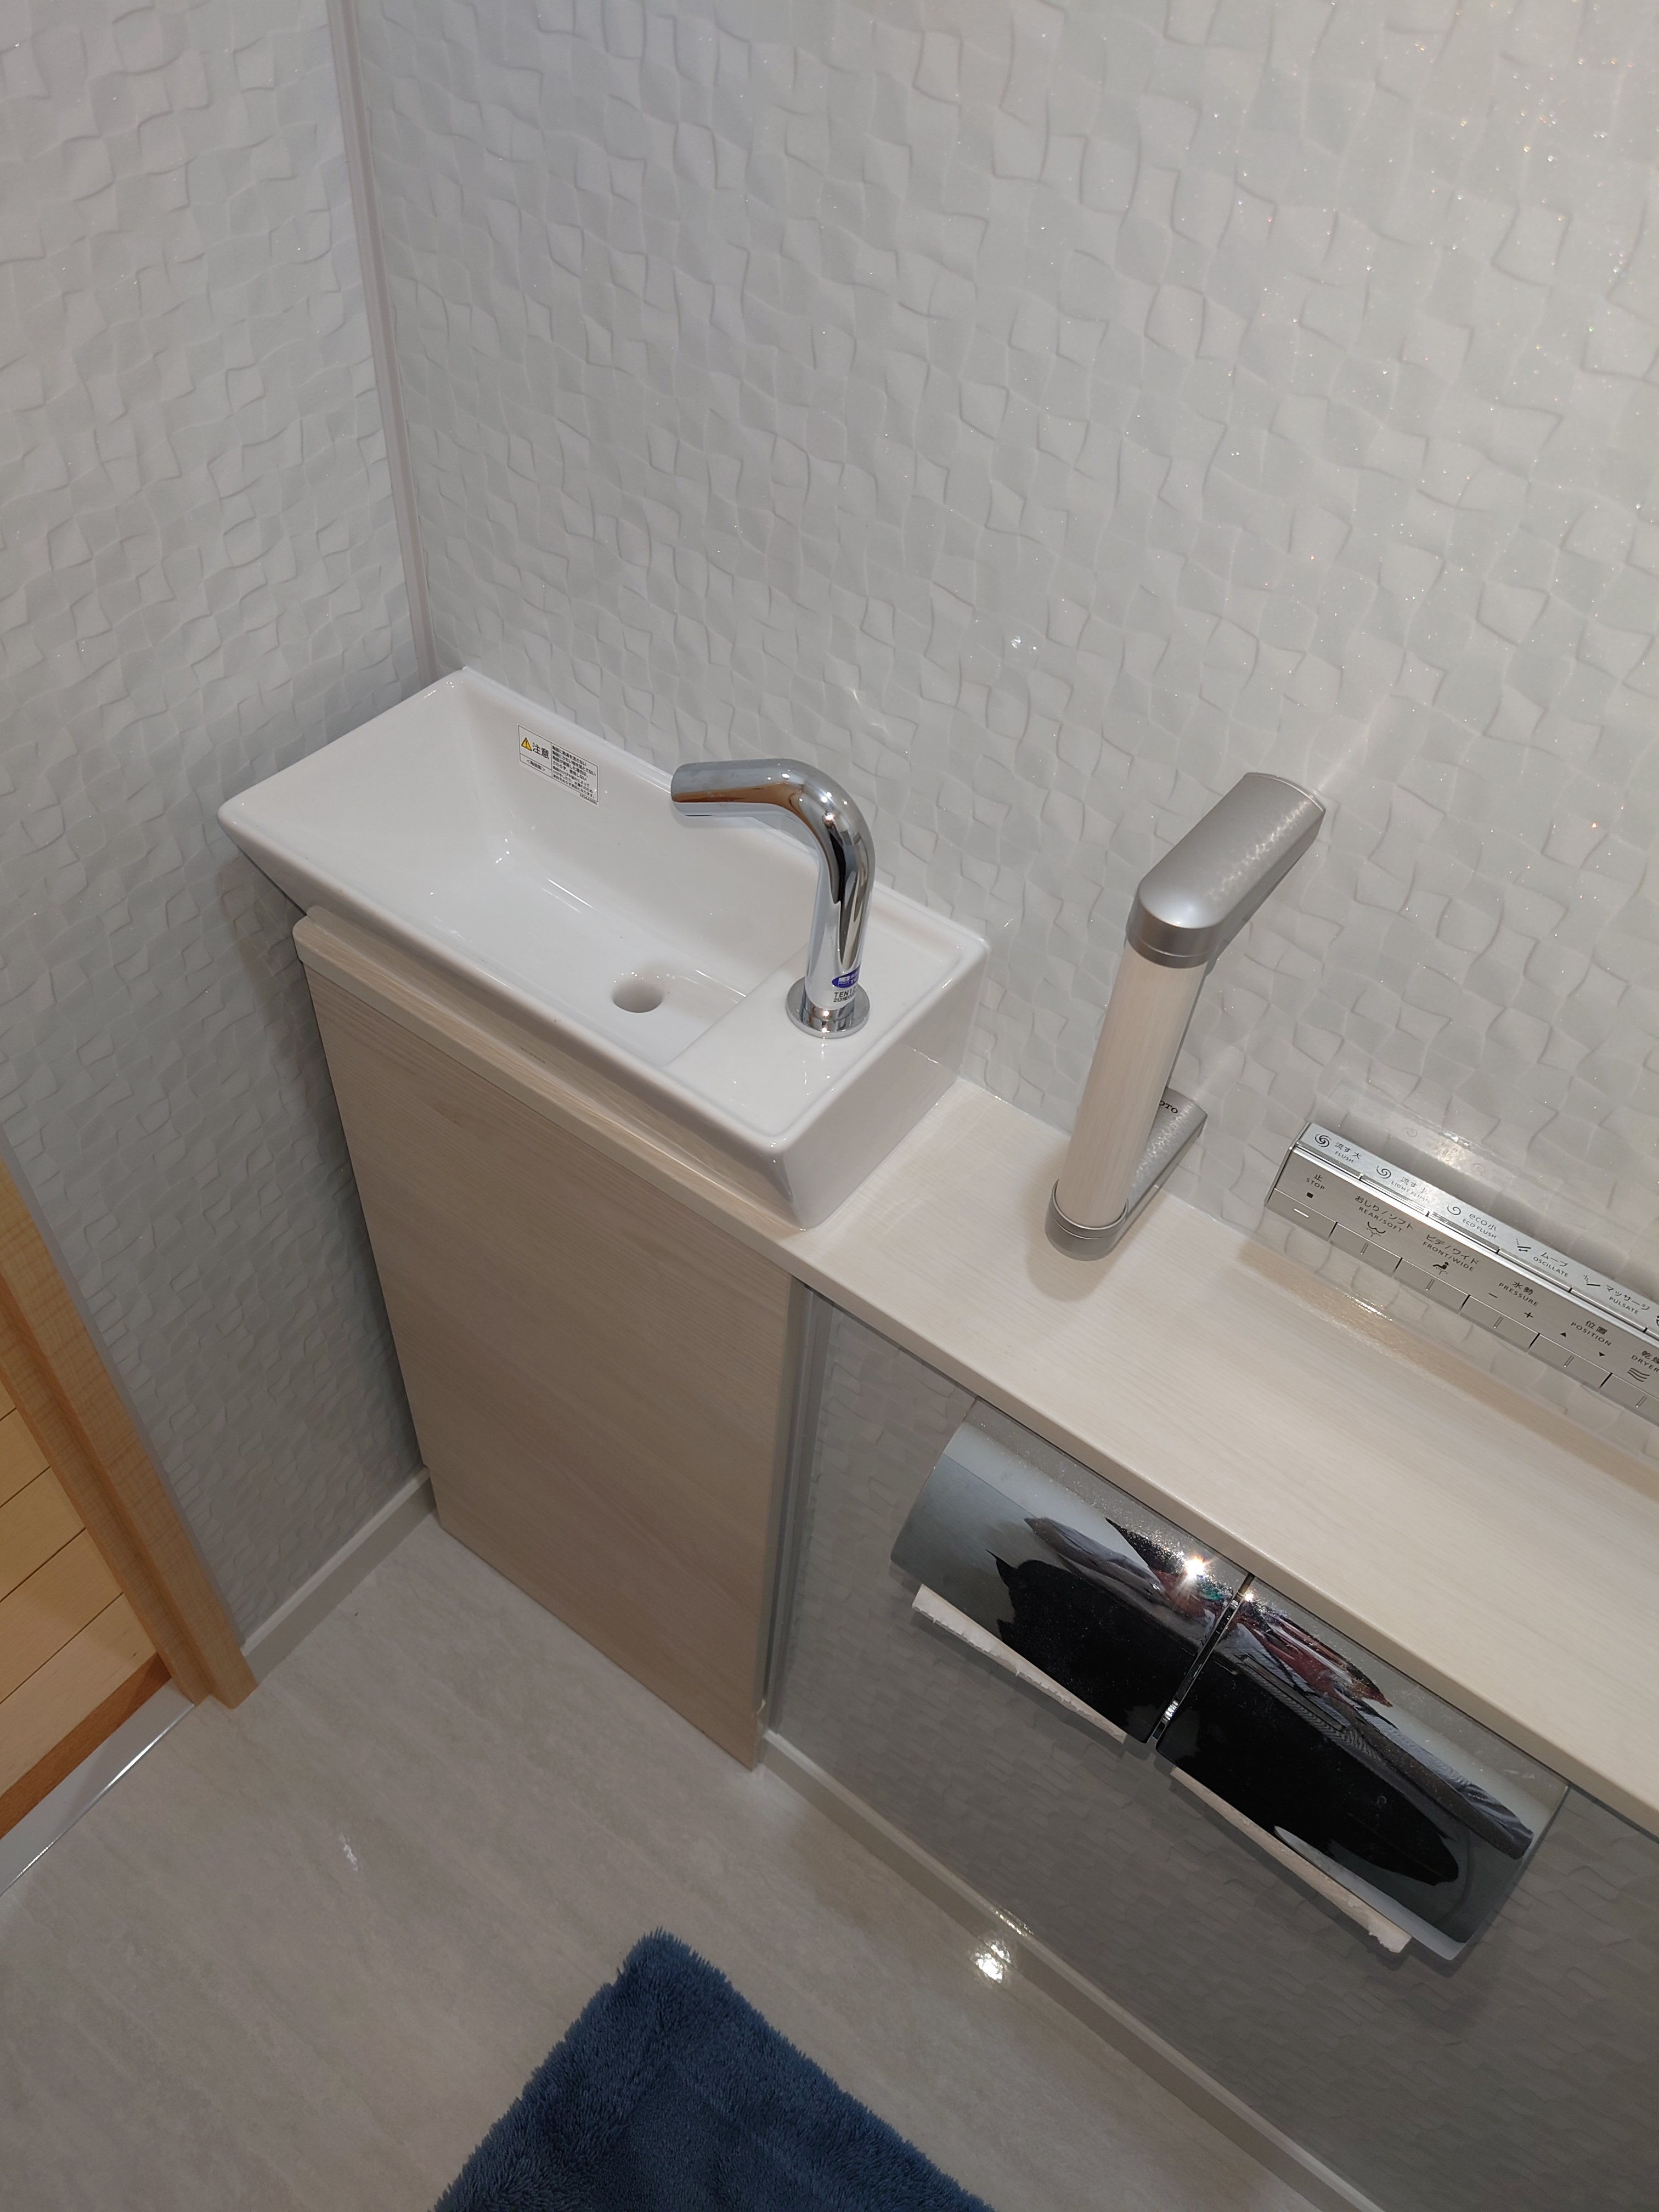 新浦安マンションレジアスフォート新浦安納入工事完成いたしました　TakaraStandardピッタリサイズ伸びの美浴室1620 鋳物ホーロー浴槽　キングオブバス浴槽の大様